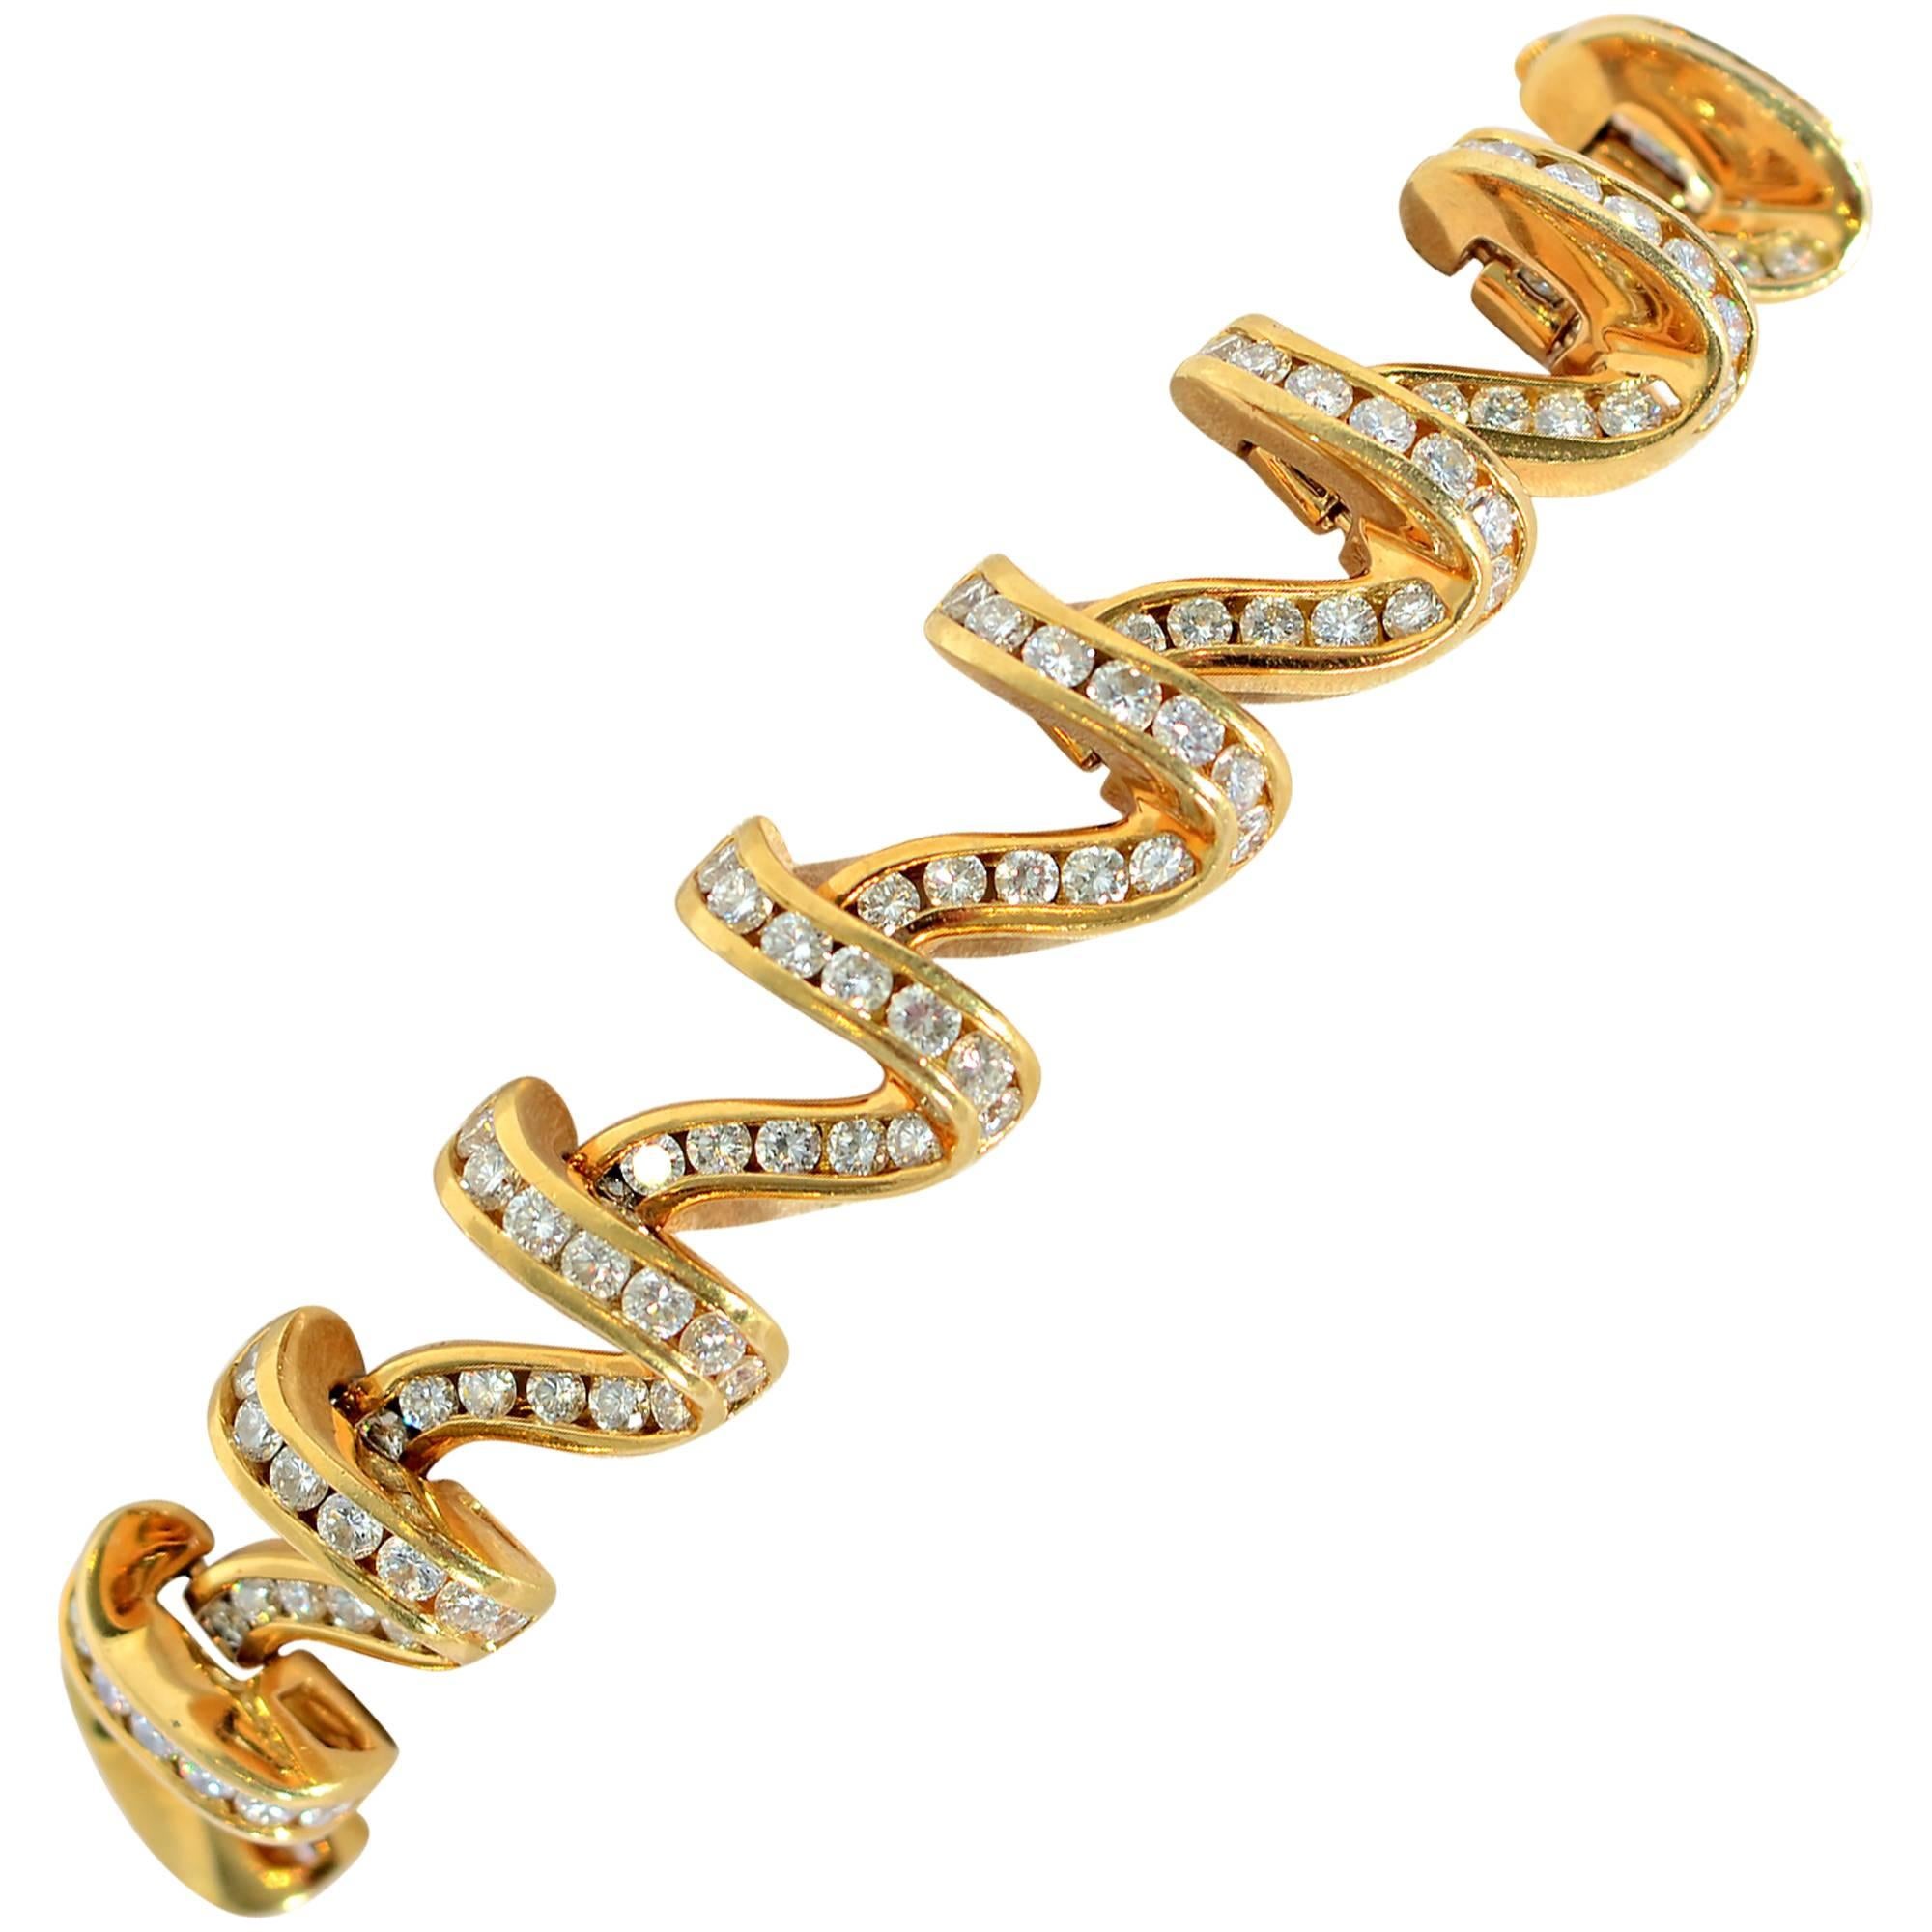 Charles Krypell Diamonds Gold Bracelet